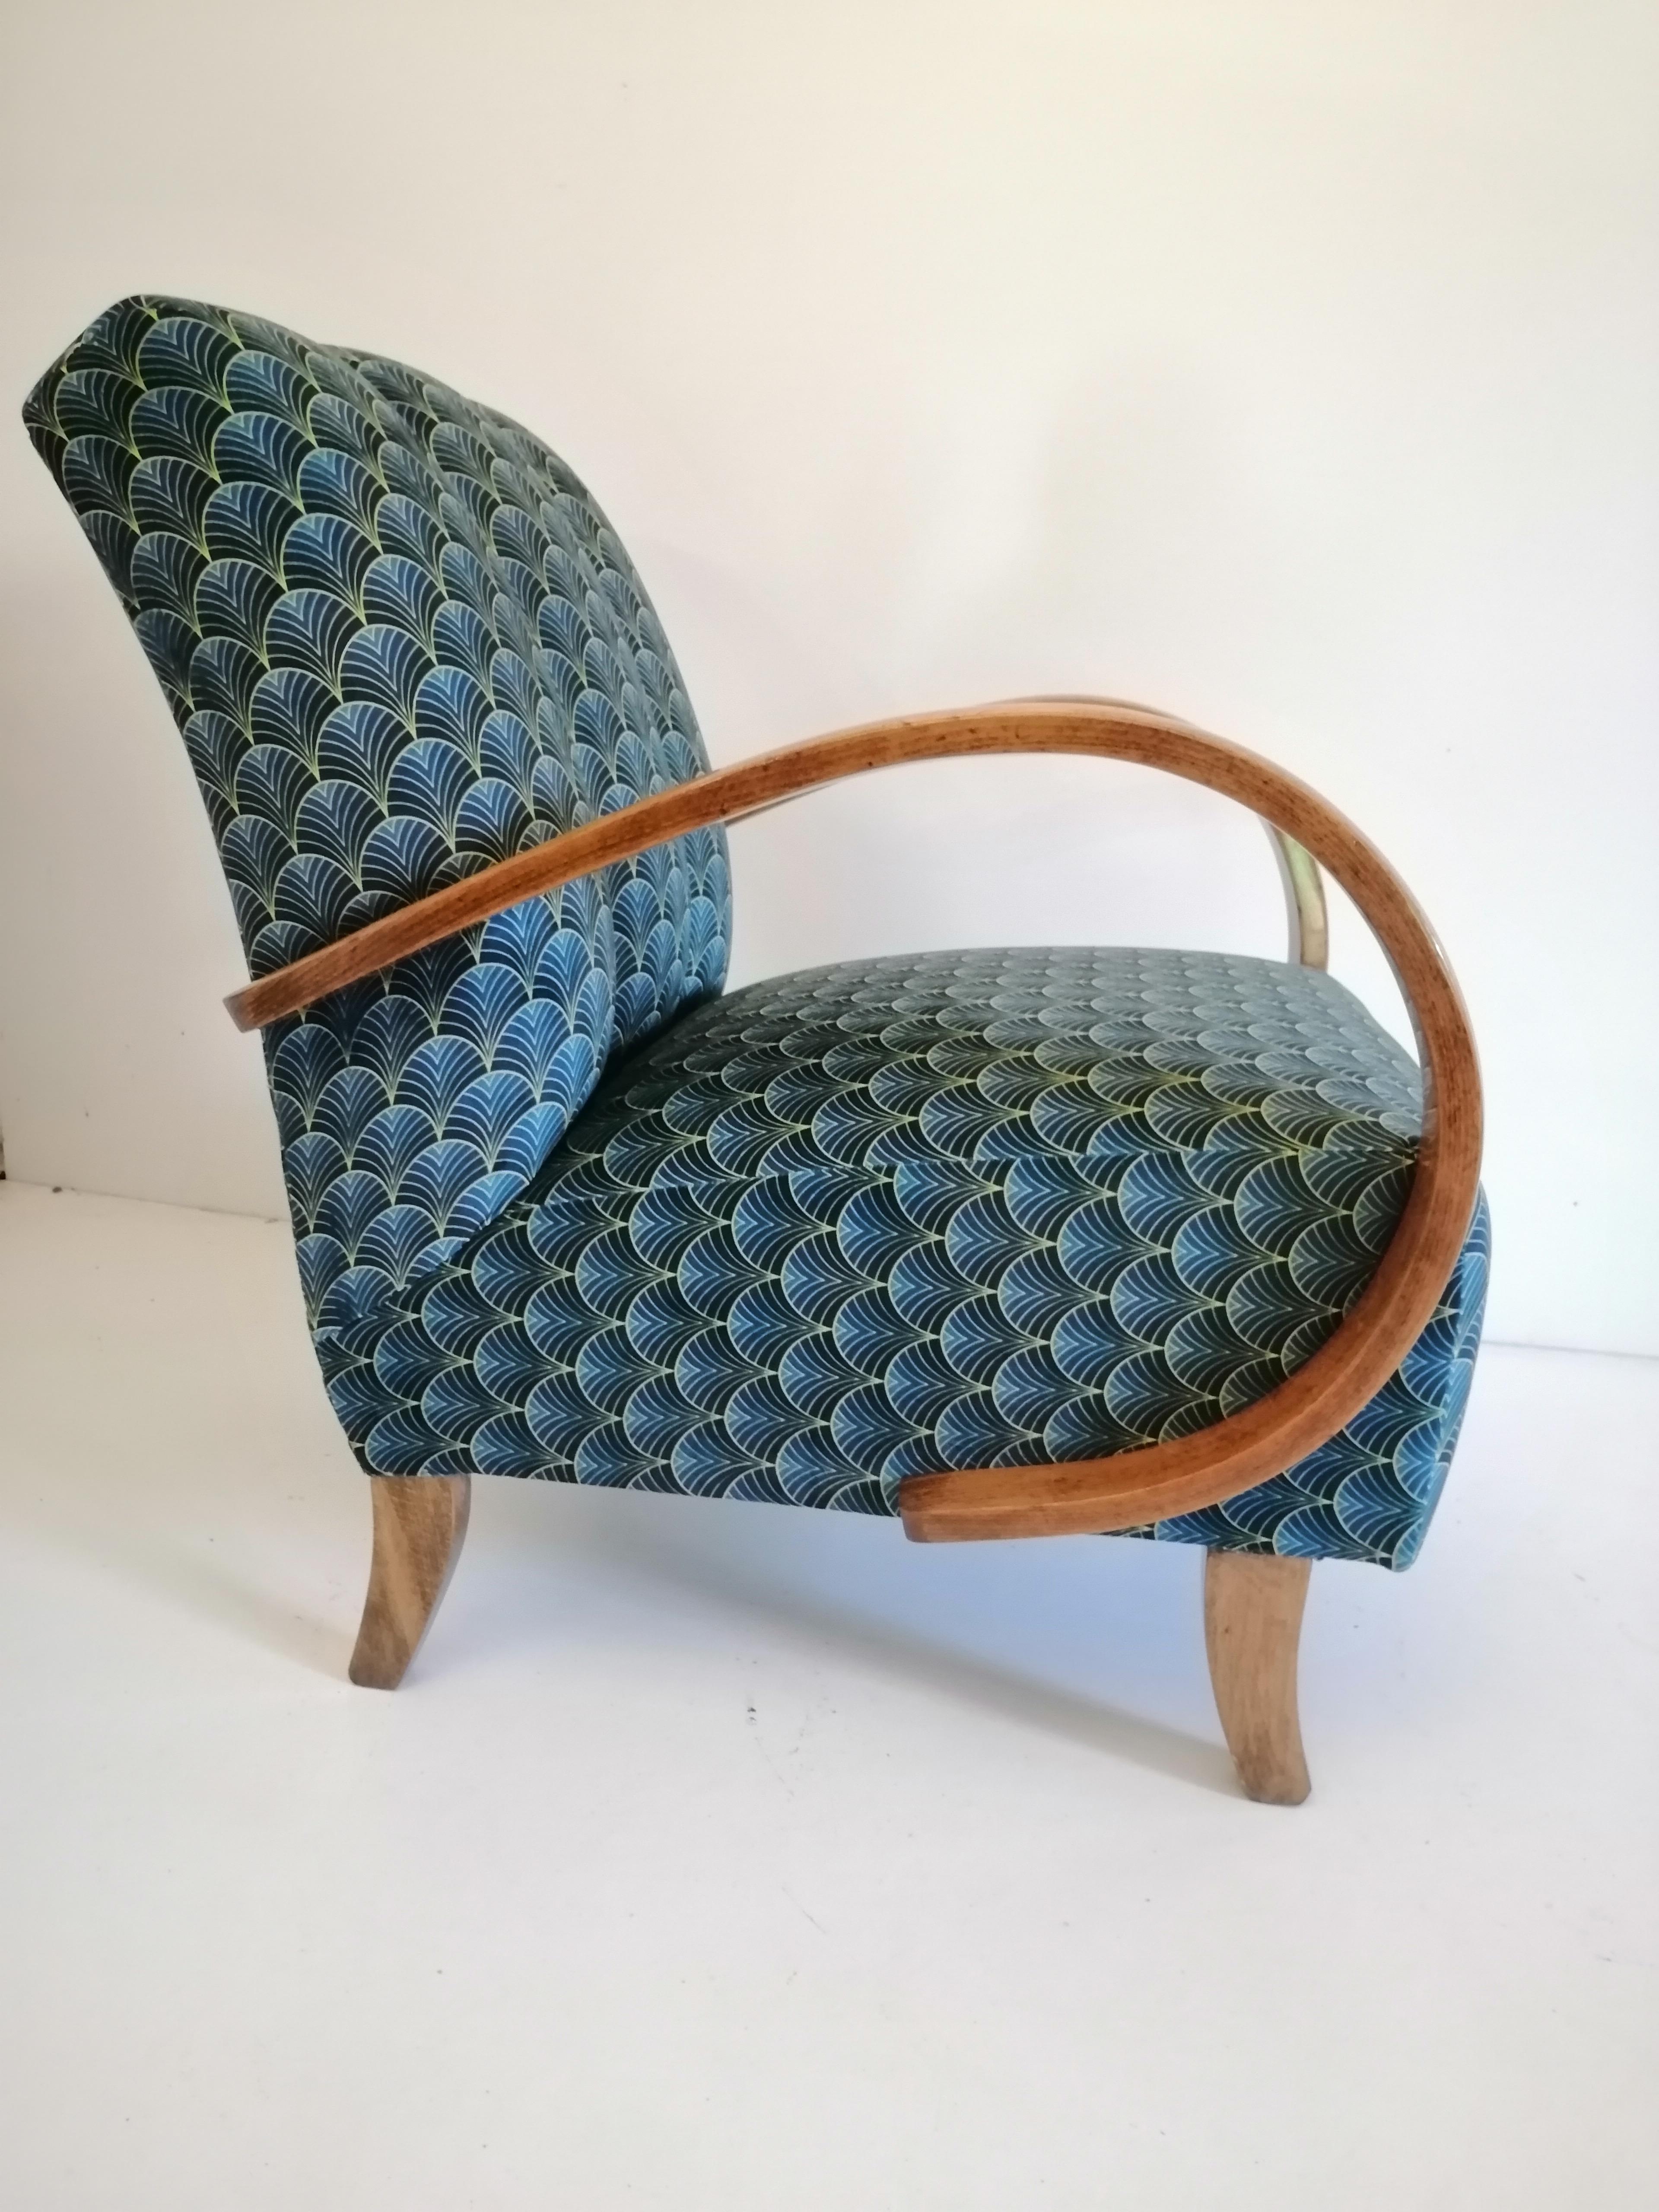 Art Deco Sessel von 1940, Tschechische Republik.
Entworfen von dem berühmten tschechischen Designer Jindrich Halabala, der zu den bedeutendsten Schöpfern der Moderne zählt. Der Höhepunkt seiner Karriere fiel in die 1930er und 1940er Jahre, als er